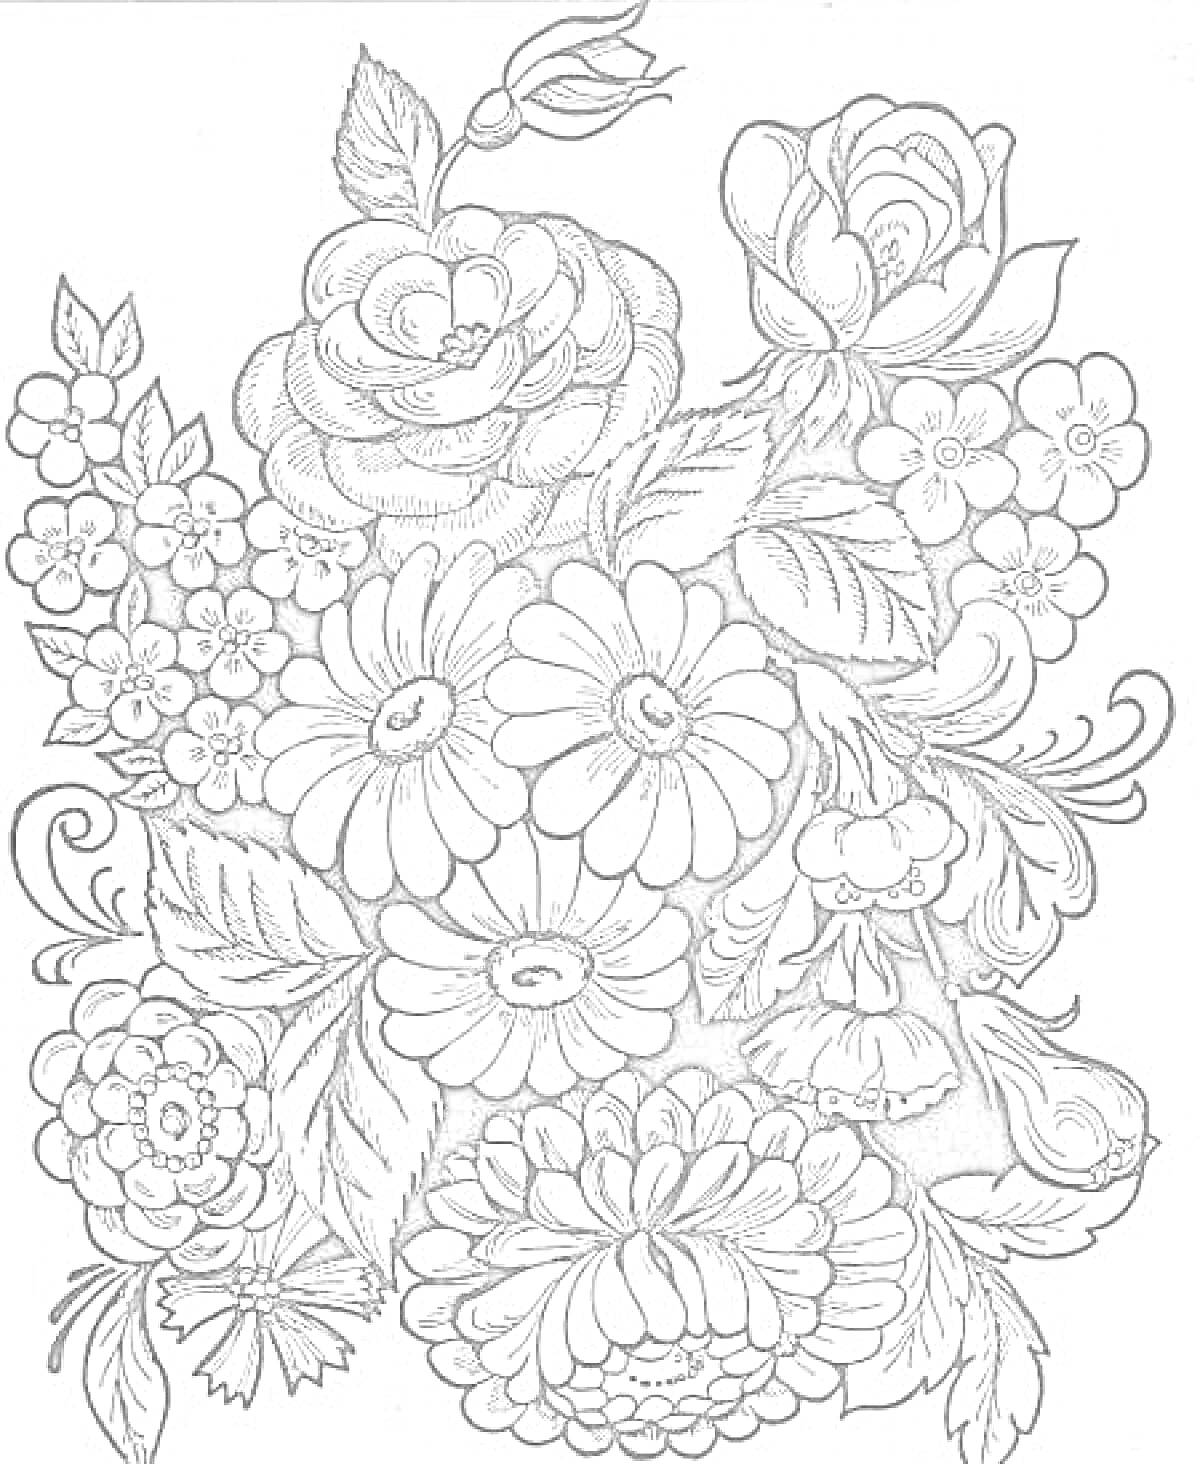 Раскраска Жостовская роспись с розами, ромашками, пионами и разнообразной листвой